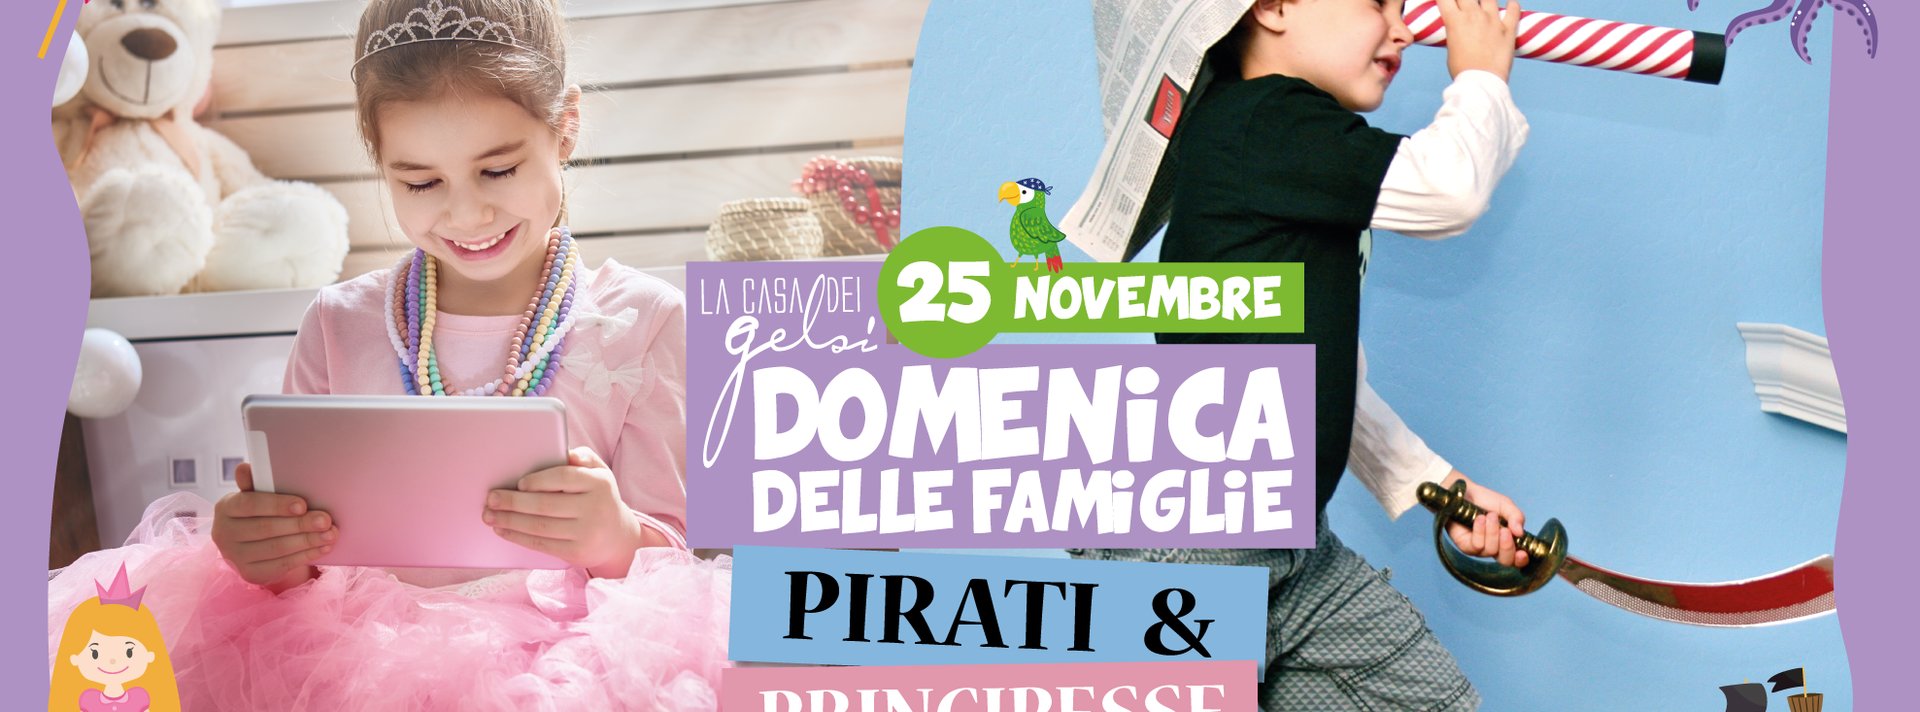 Pirati principesse domenica famiglie 25 novembre 2